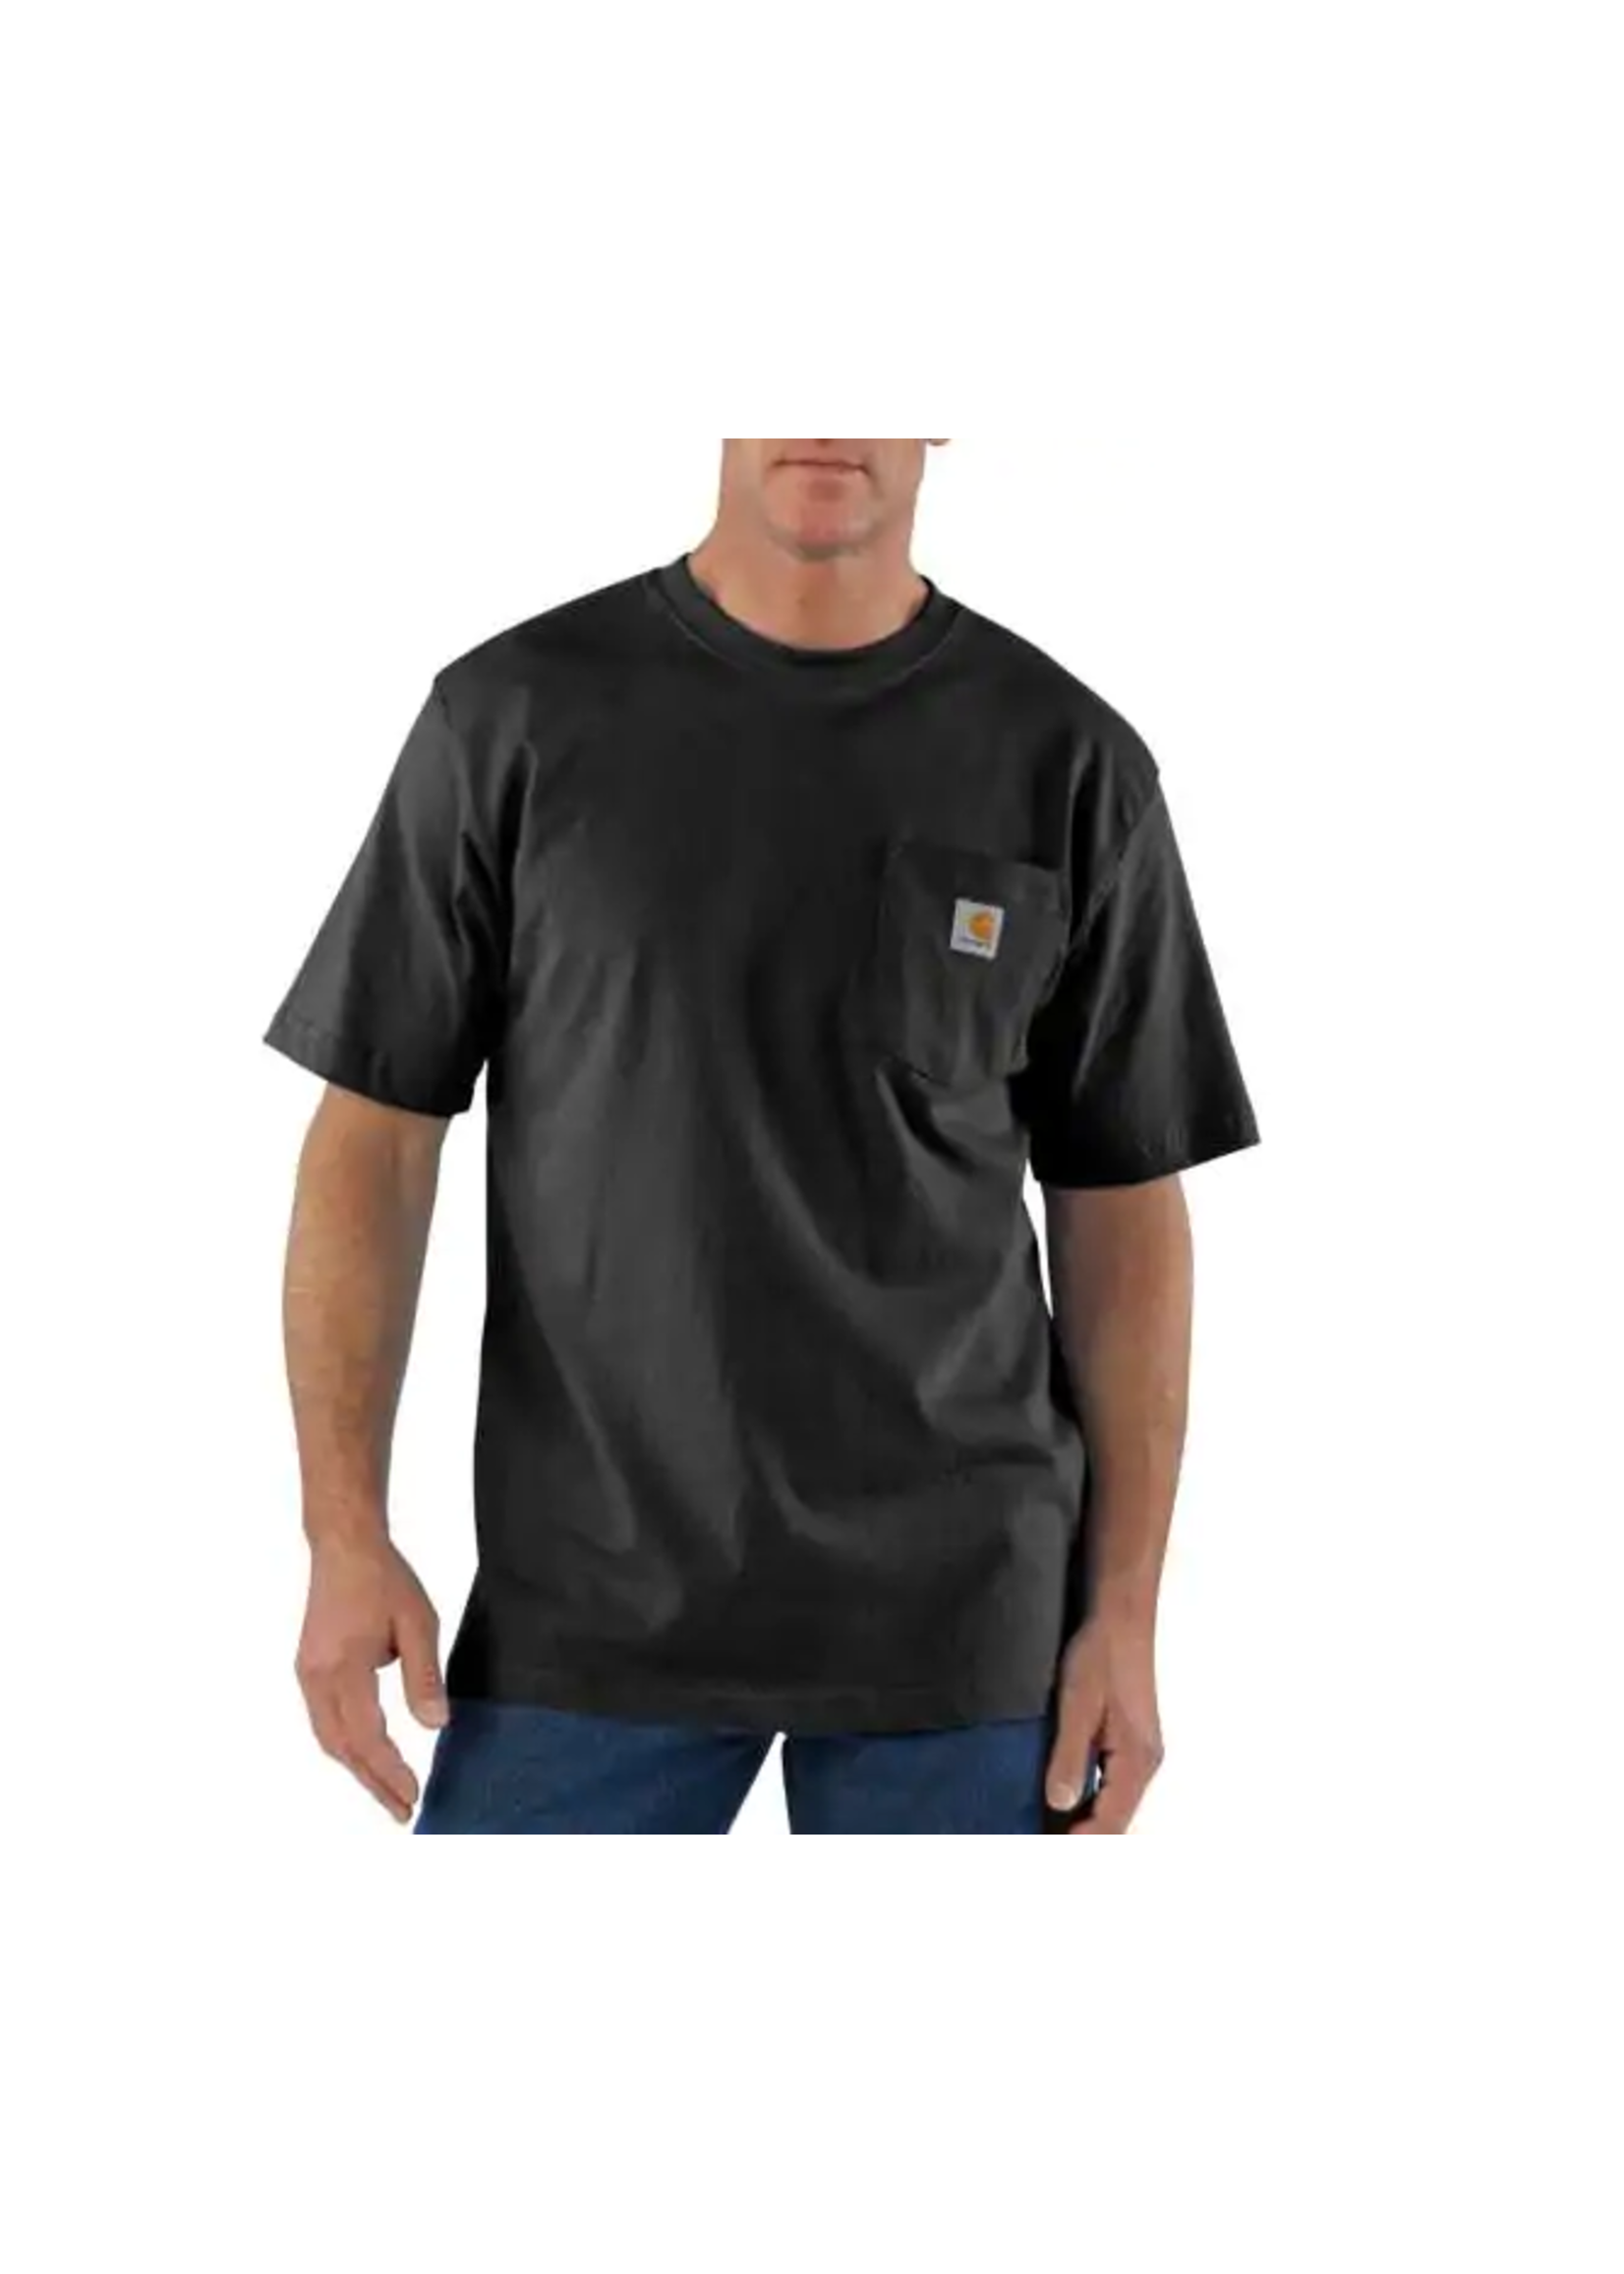 Carhartt Workwear Pocket T-Shirt -  Tall